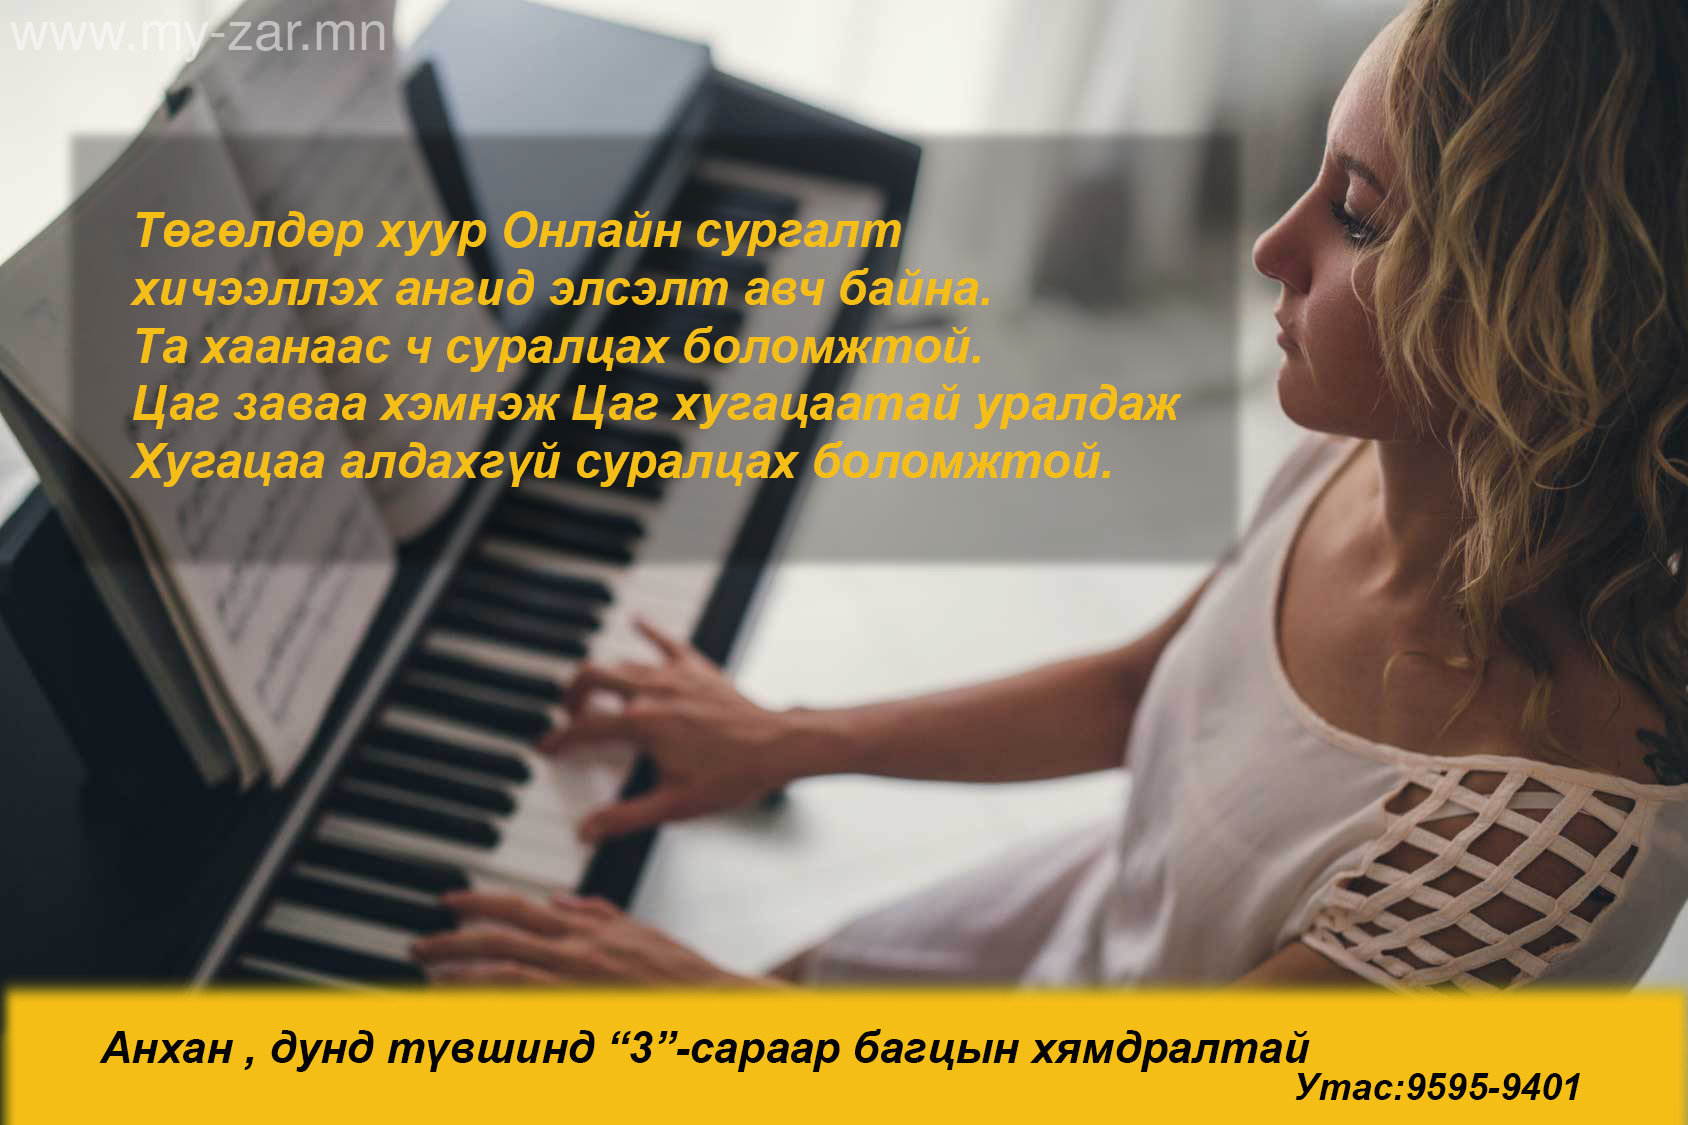 Онлайн төгөлдөр хуур 100% Ганцаарчилсан сургалтанд элсэлт авч байна.